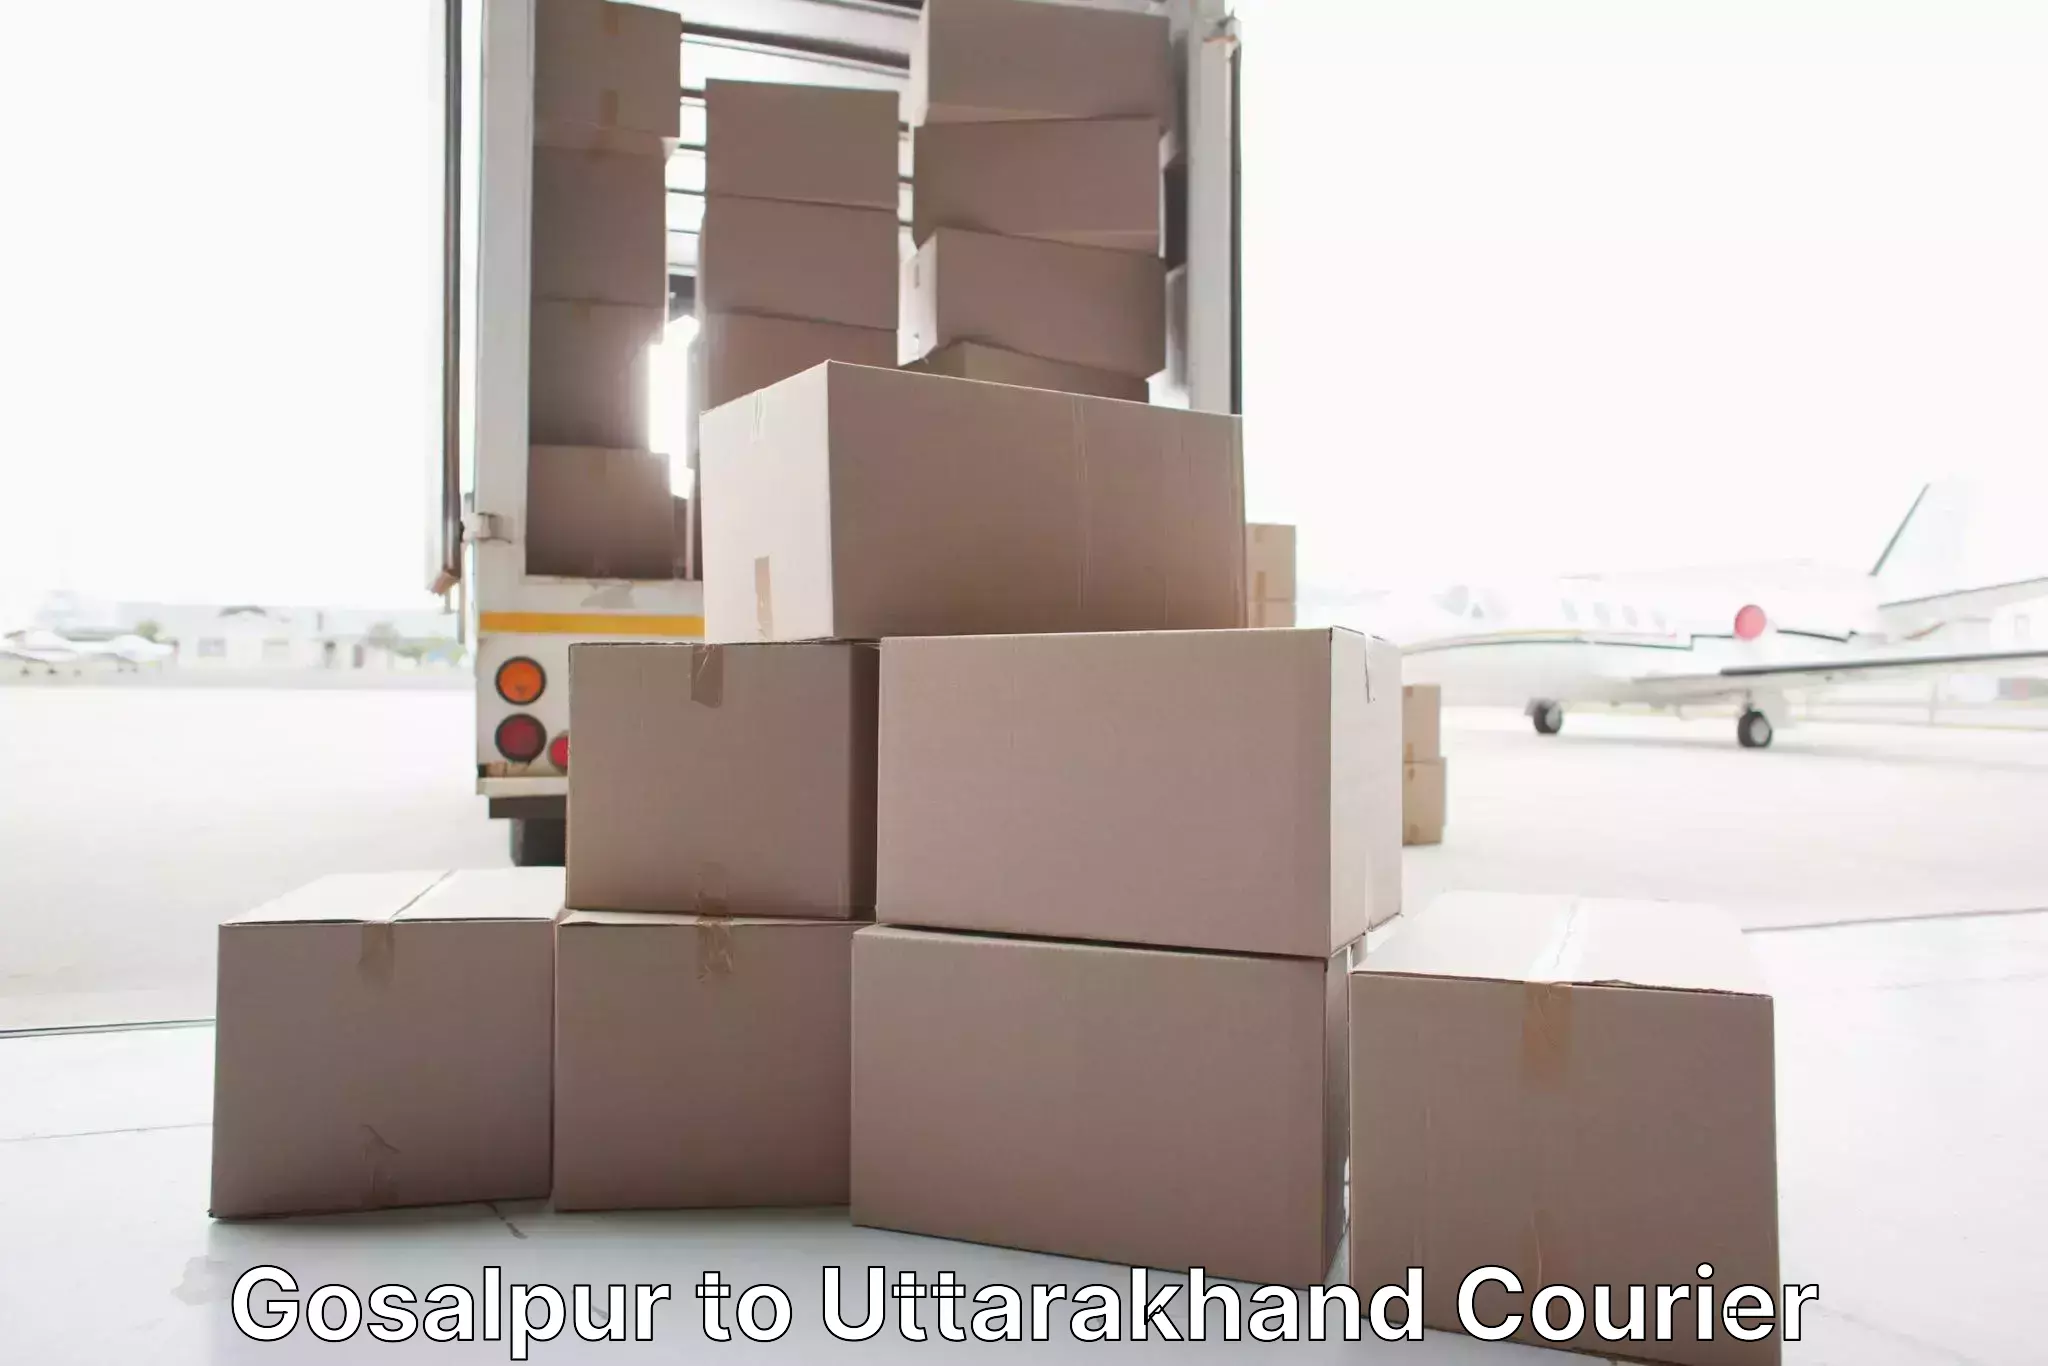 Local household movers Gosalpur to Uttarakhand